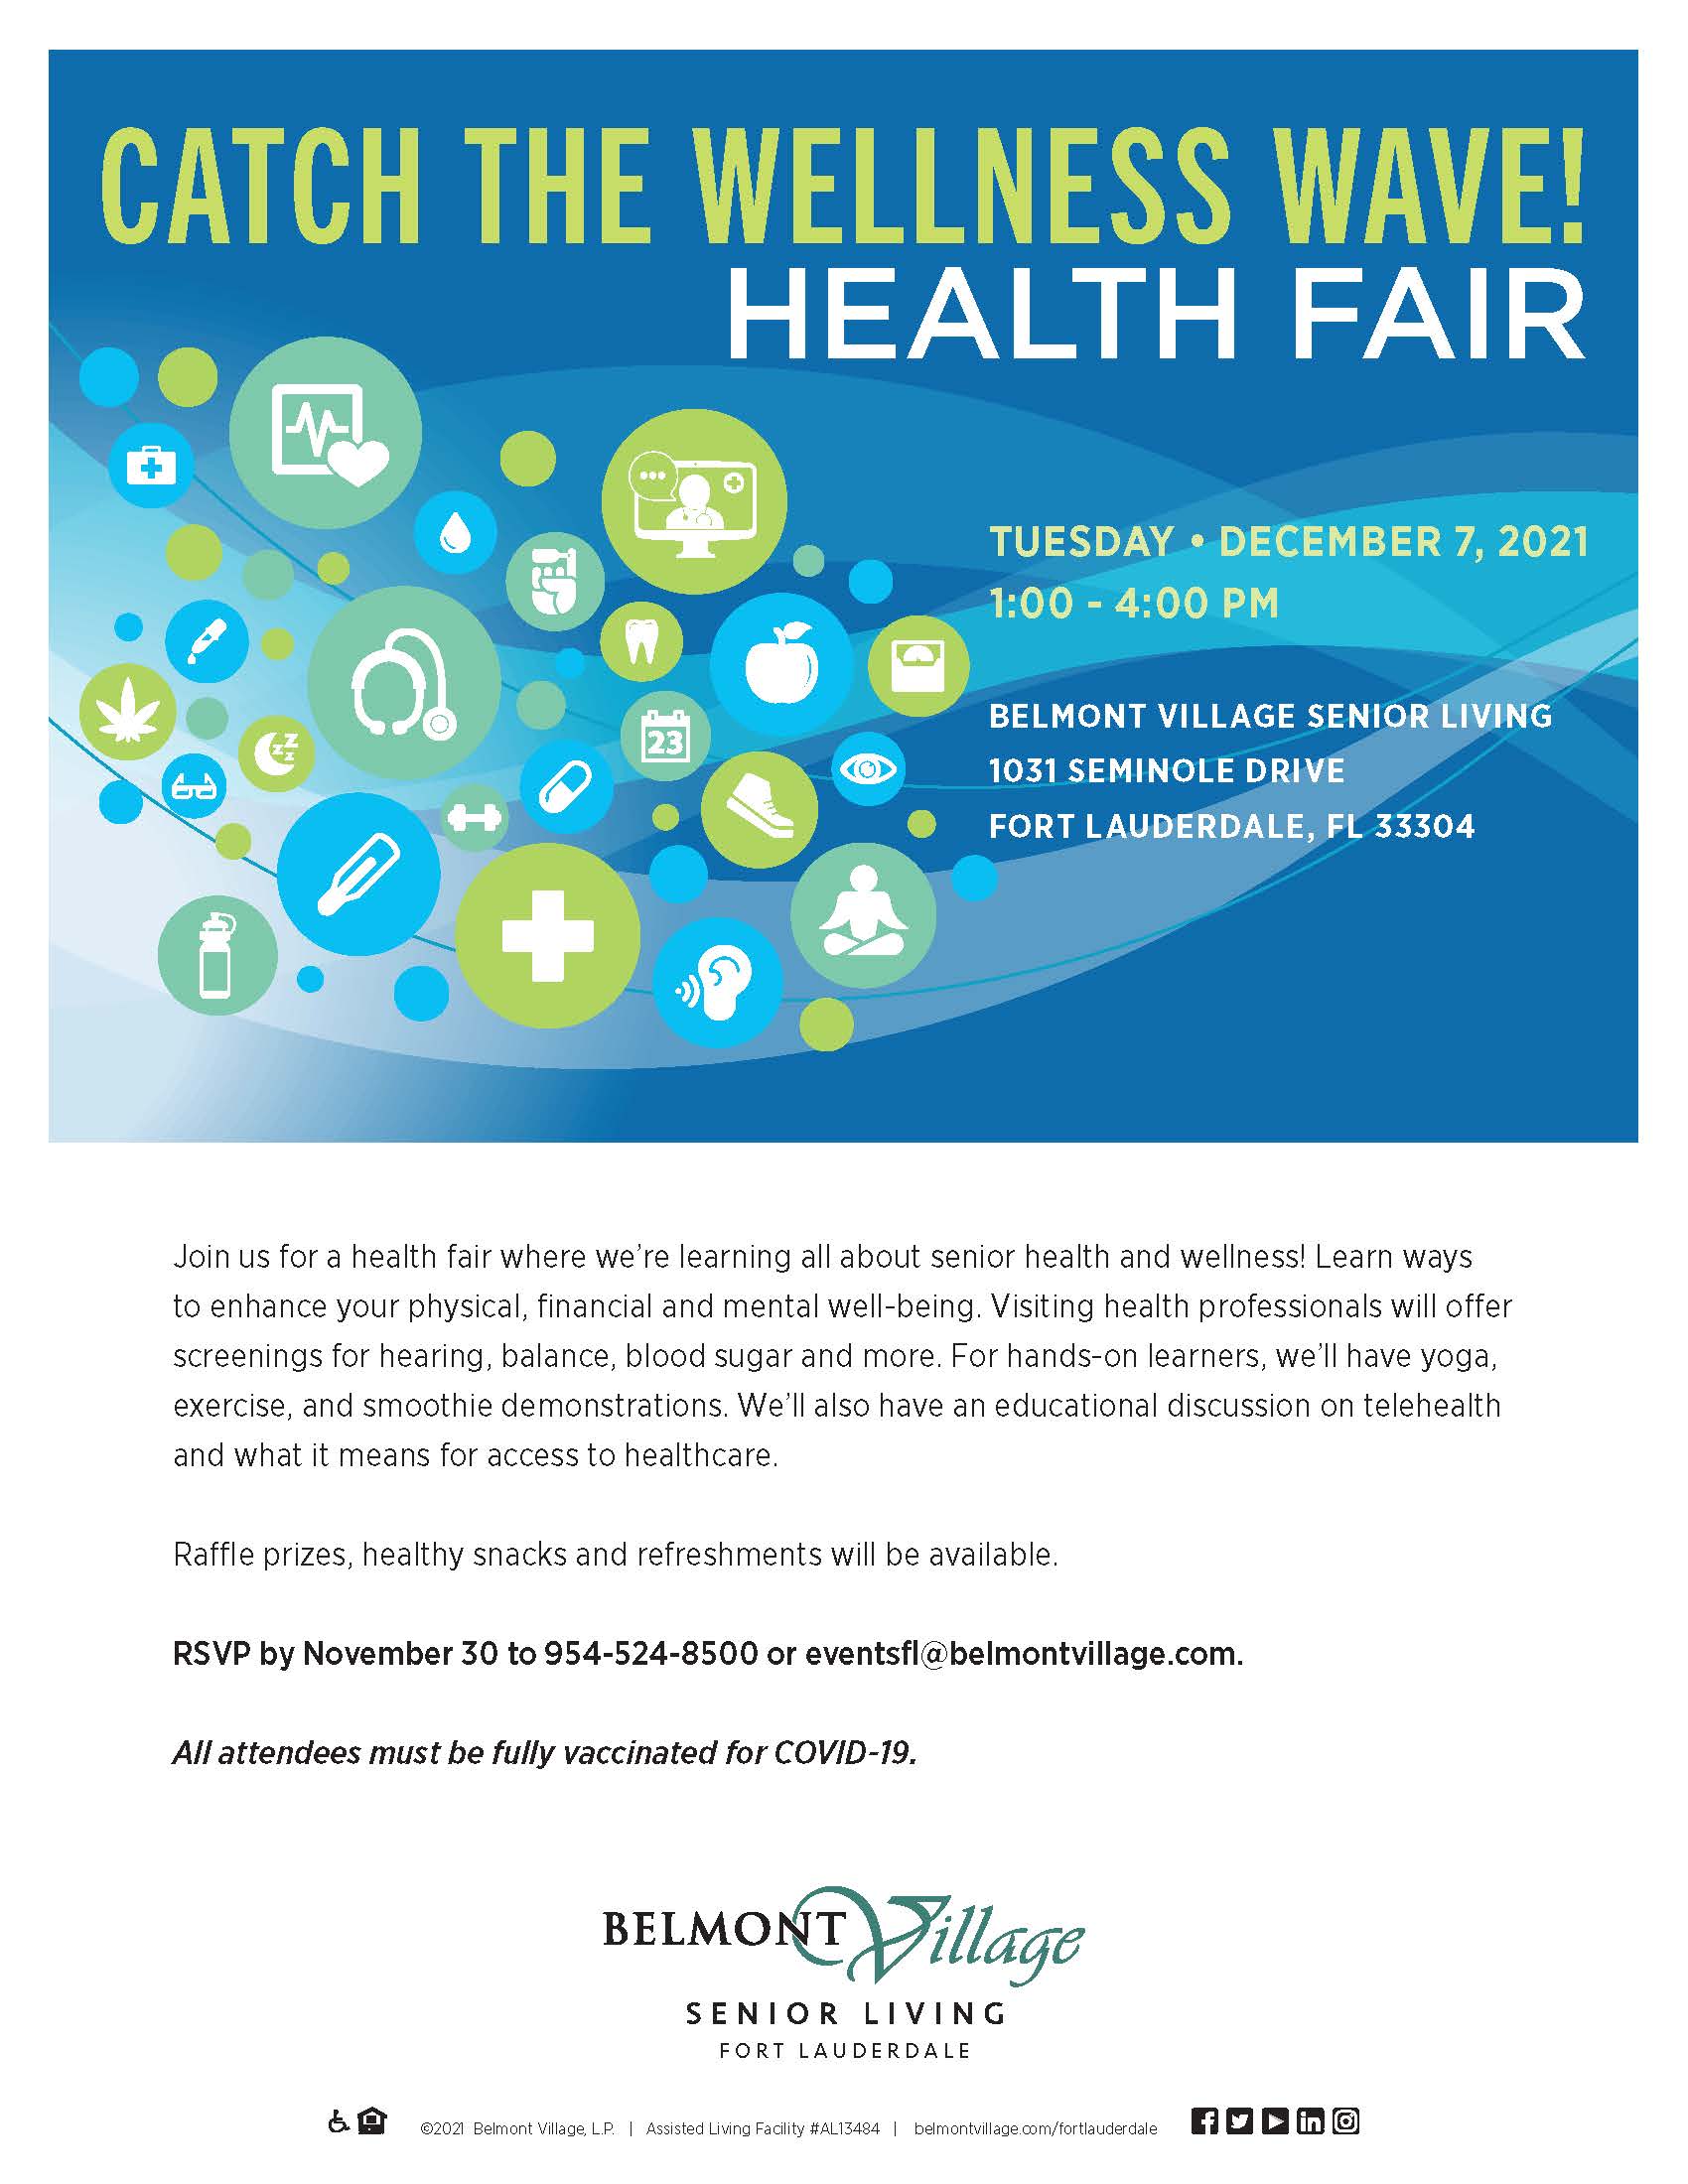 Belmont Village Health Fair